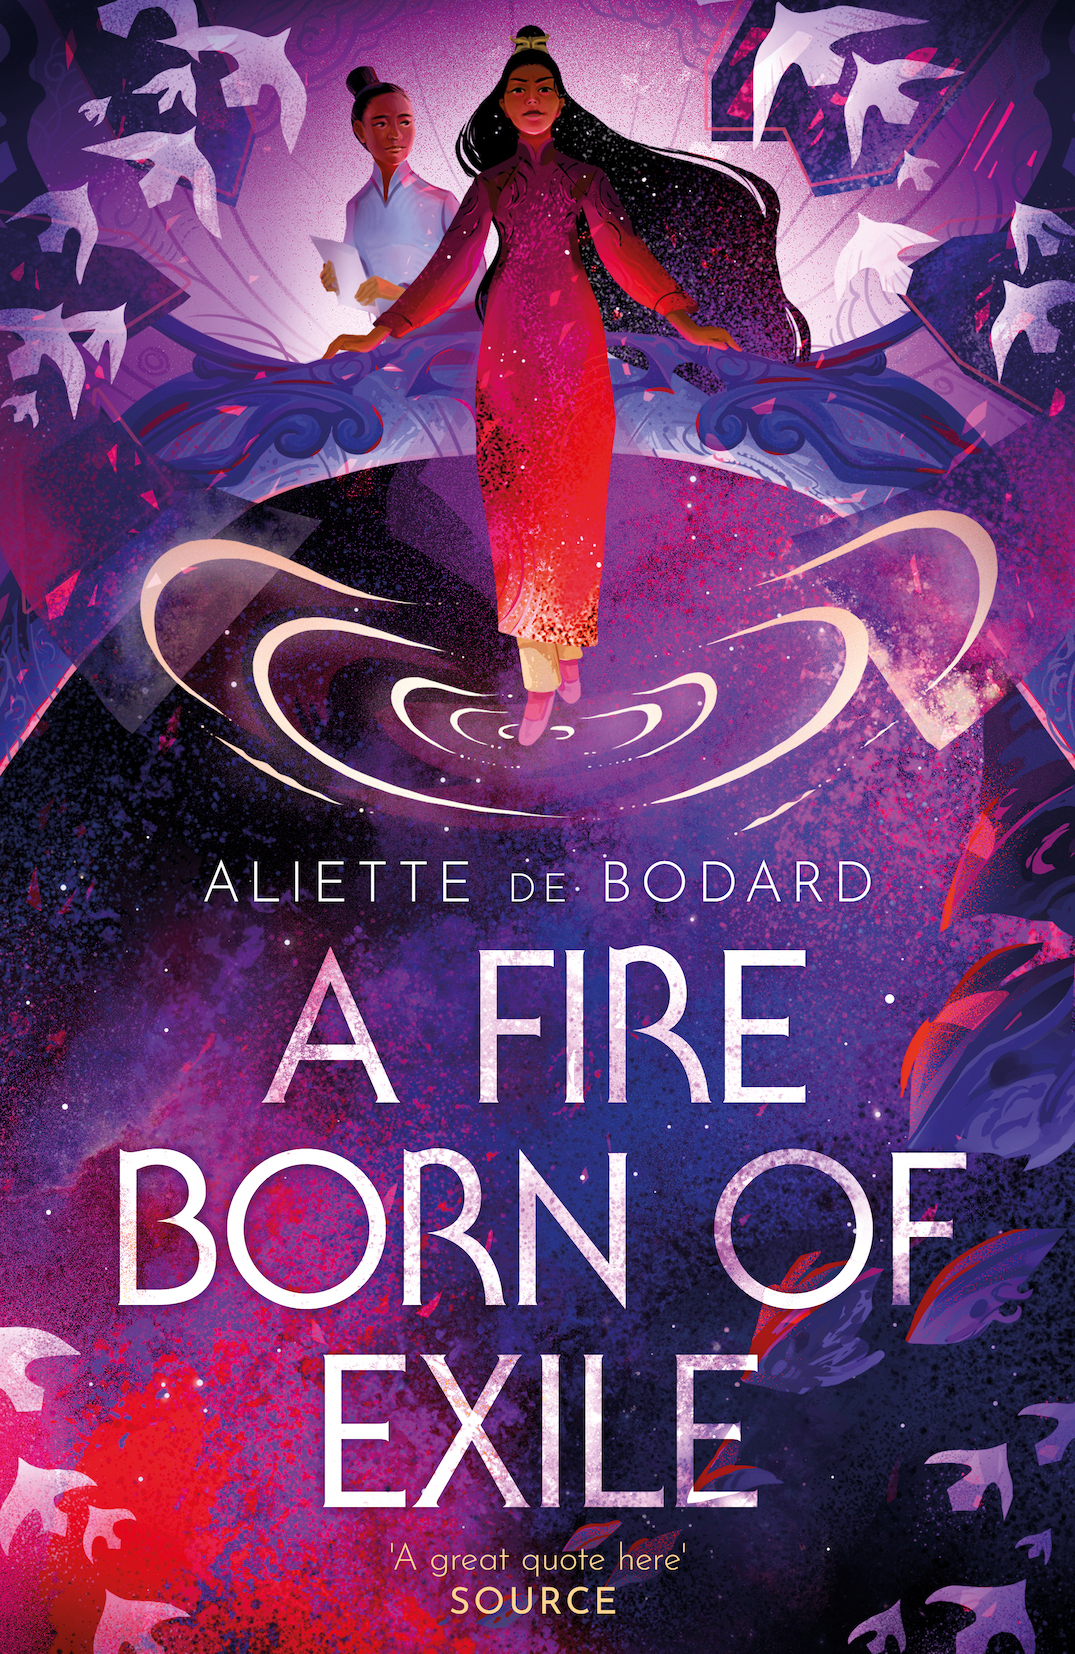 Liz Bourke Reviews A Fire Born of Exile by Aliette de Bodard